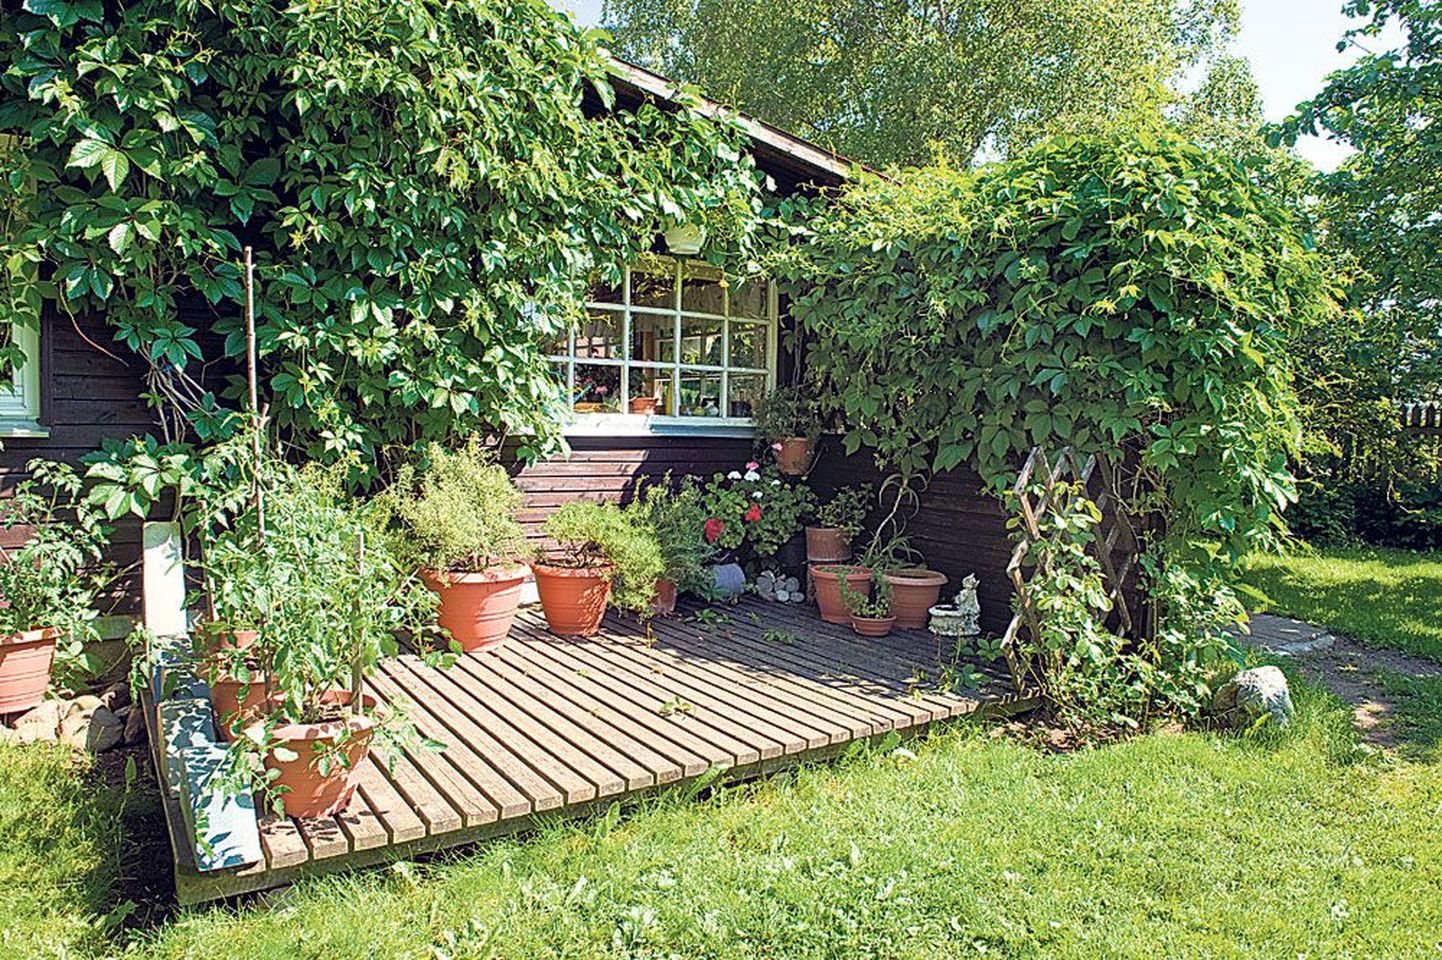 Päikeselembesed suvitamas: terrassil tunnevad end hästi rosmariinid, basiilikud, lavendlid jt Vahemere maadest pärit taimed.